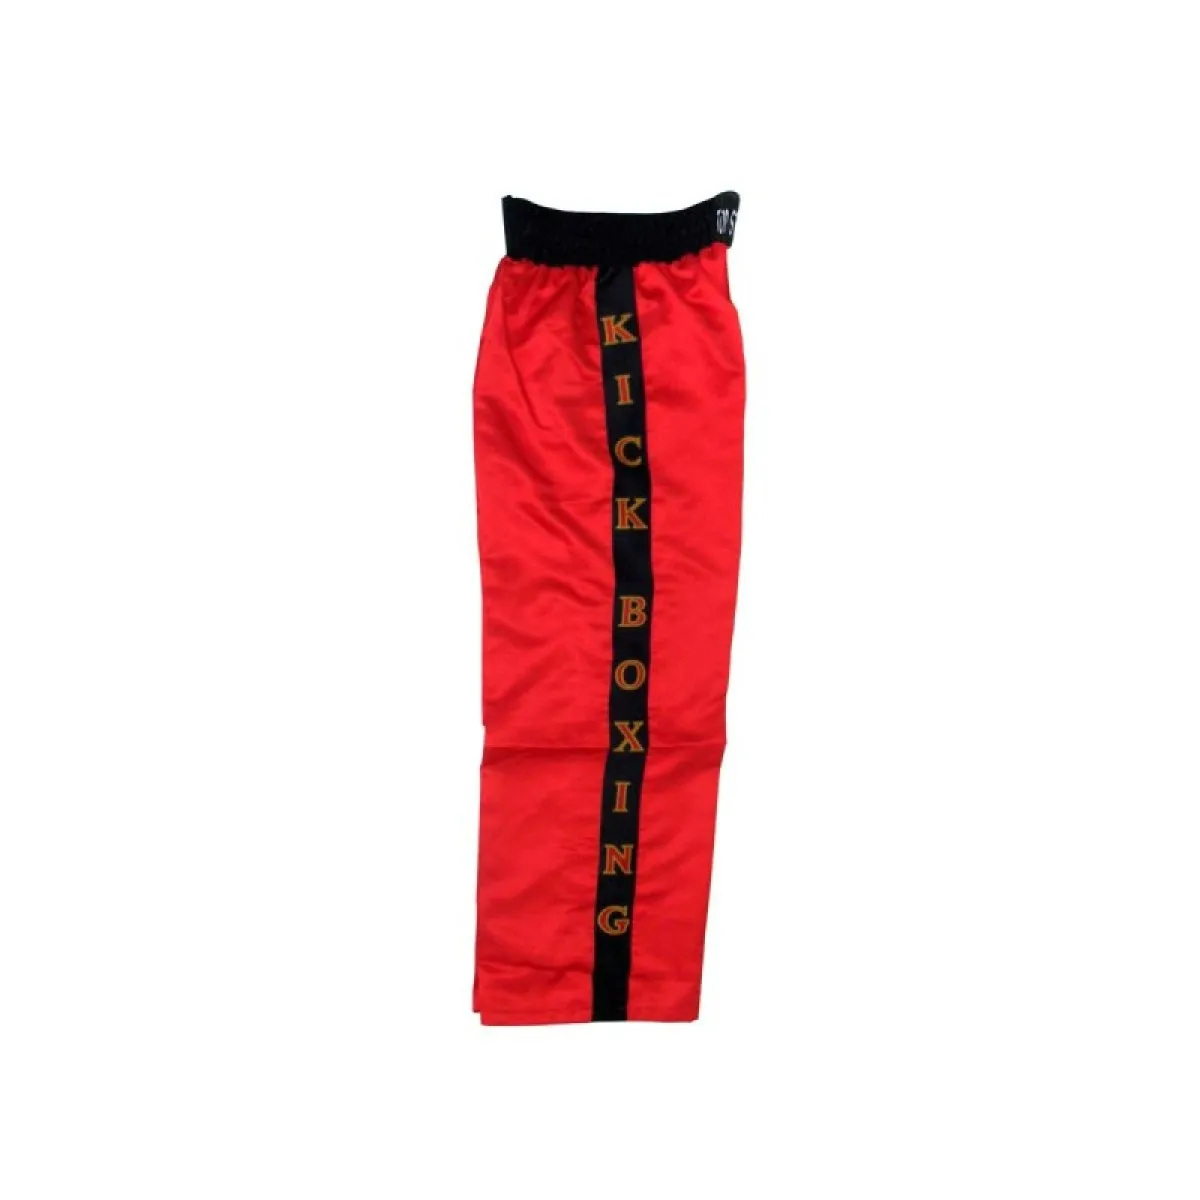 Pantalon de kickboxing rouge avec bandes noires et kickboxing